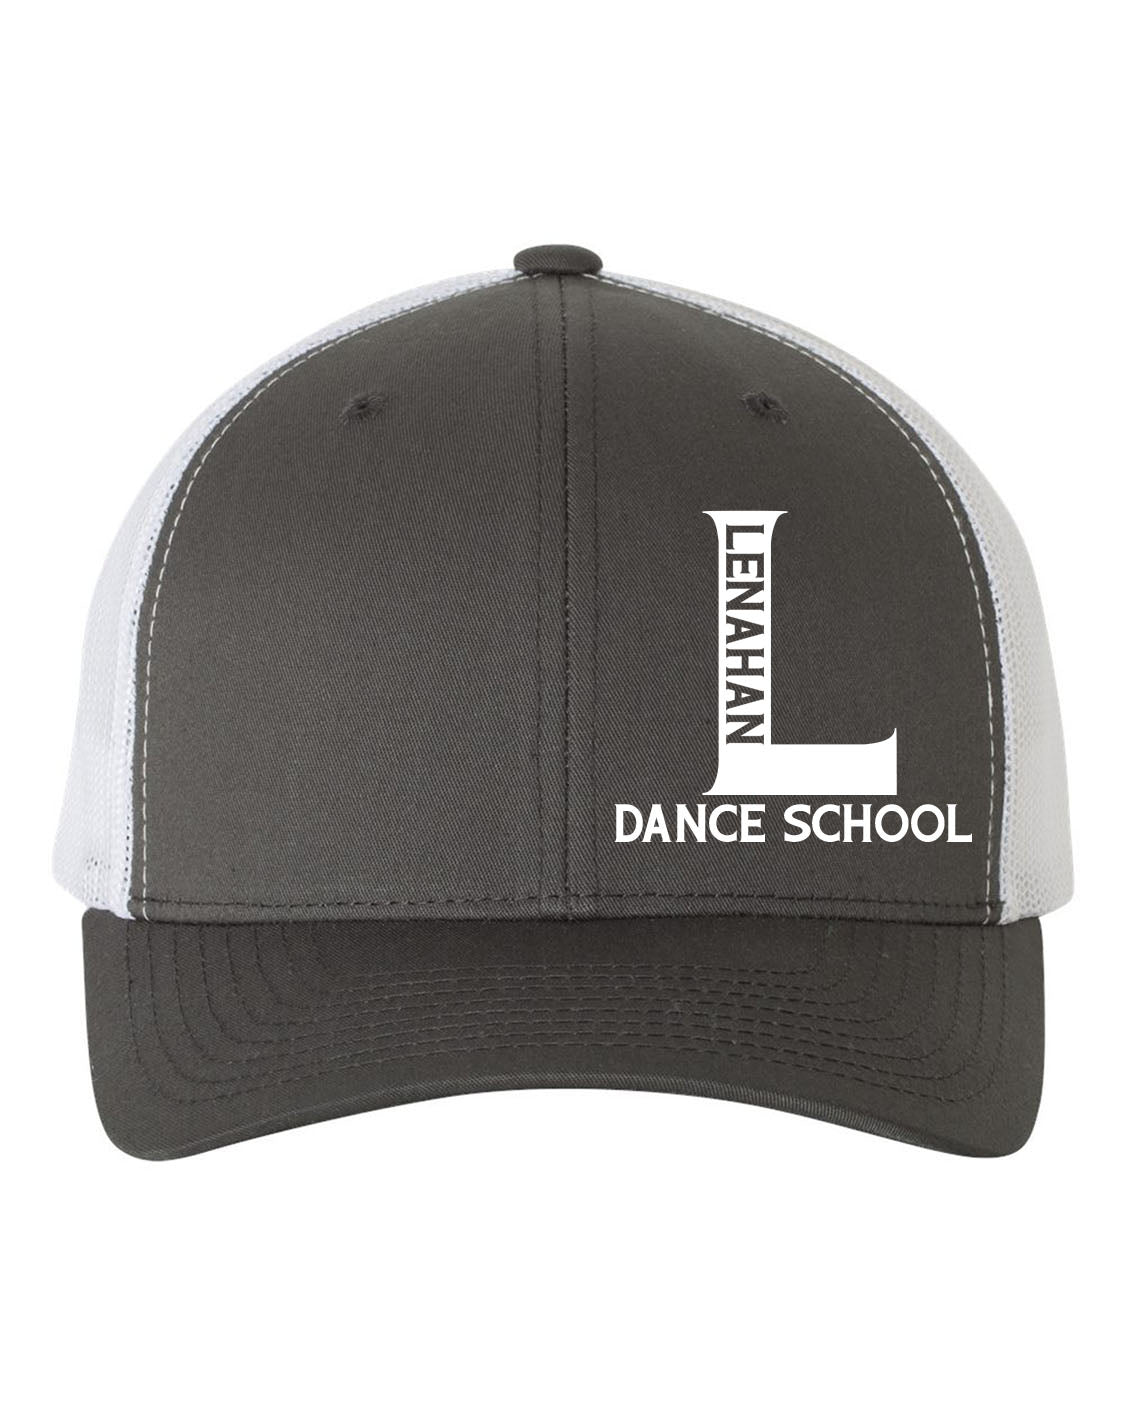 Lenahan Dance Design 1 Trucker Hat